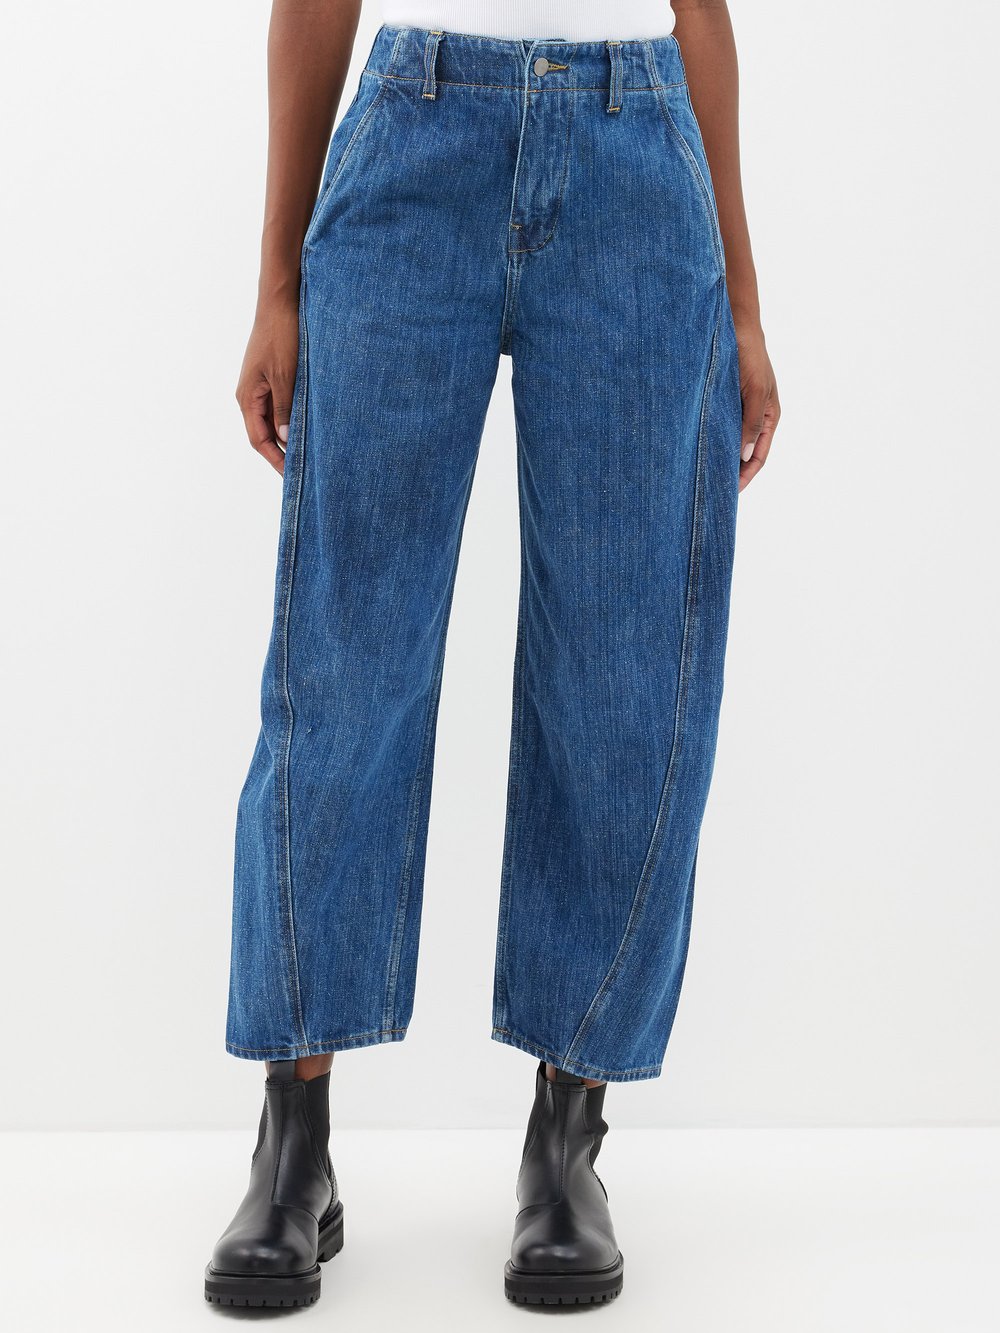 цена Укороченные джинсы akerman с объемными штанинами Studio Nicholson, синий